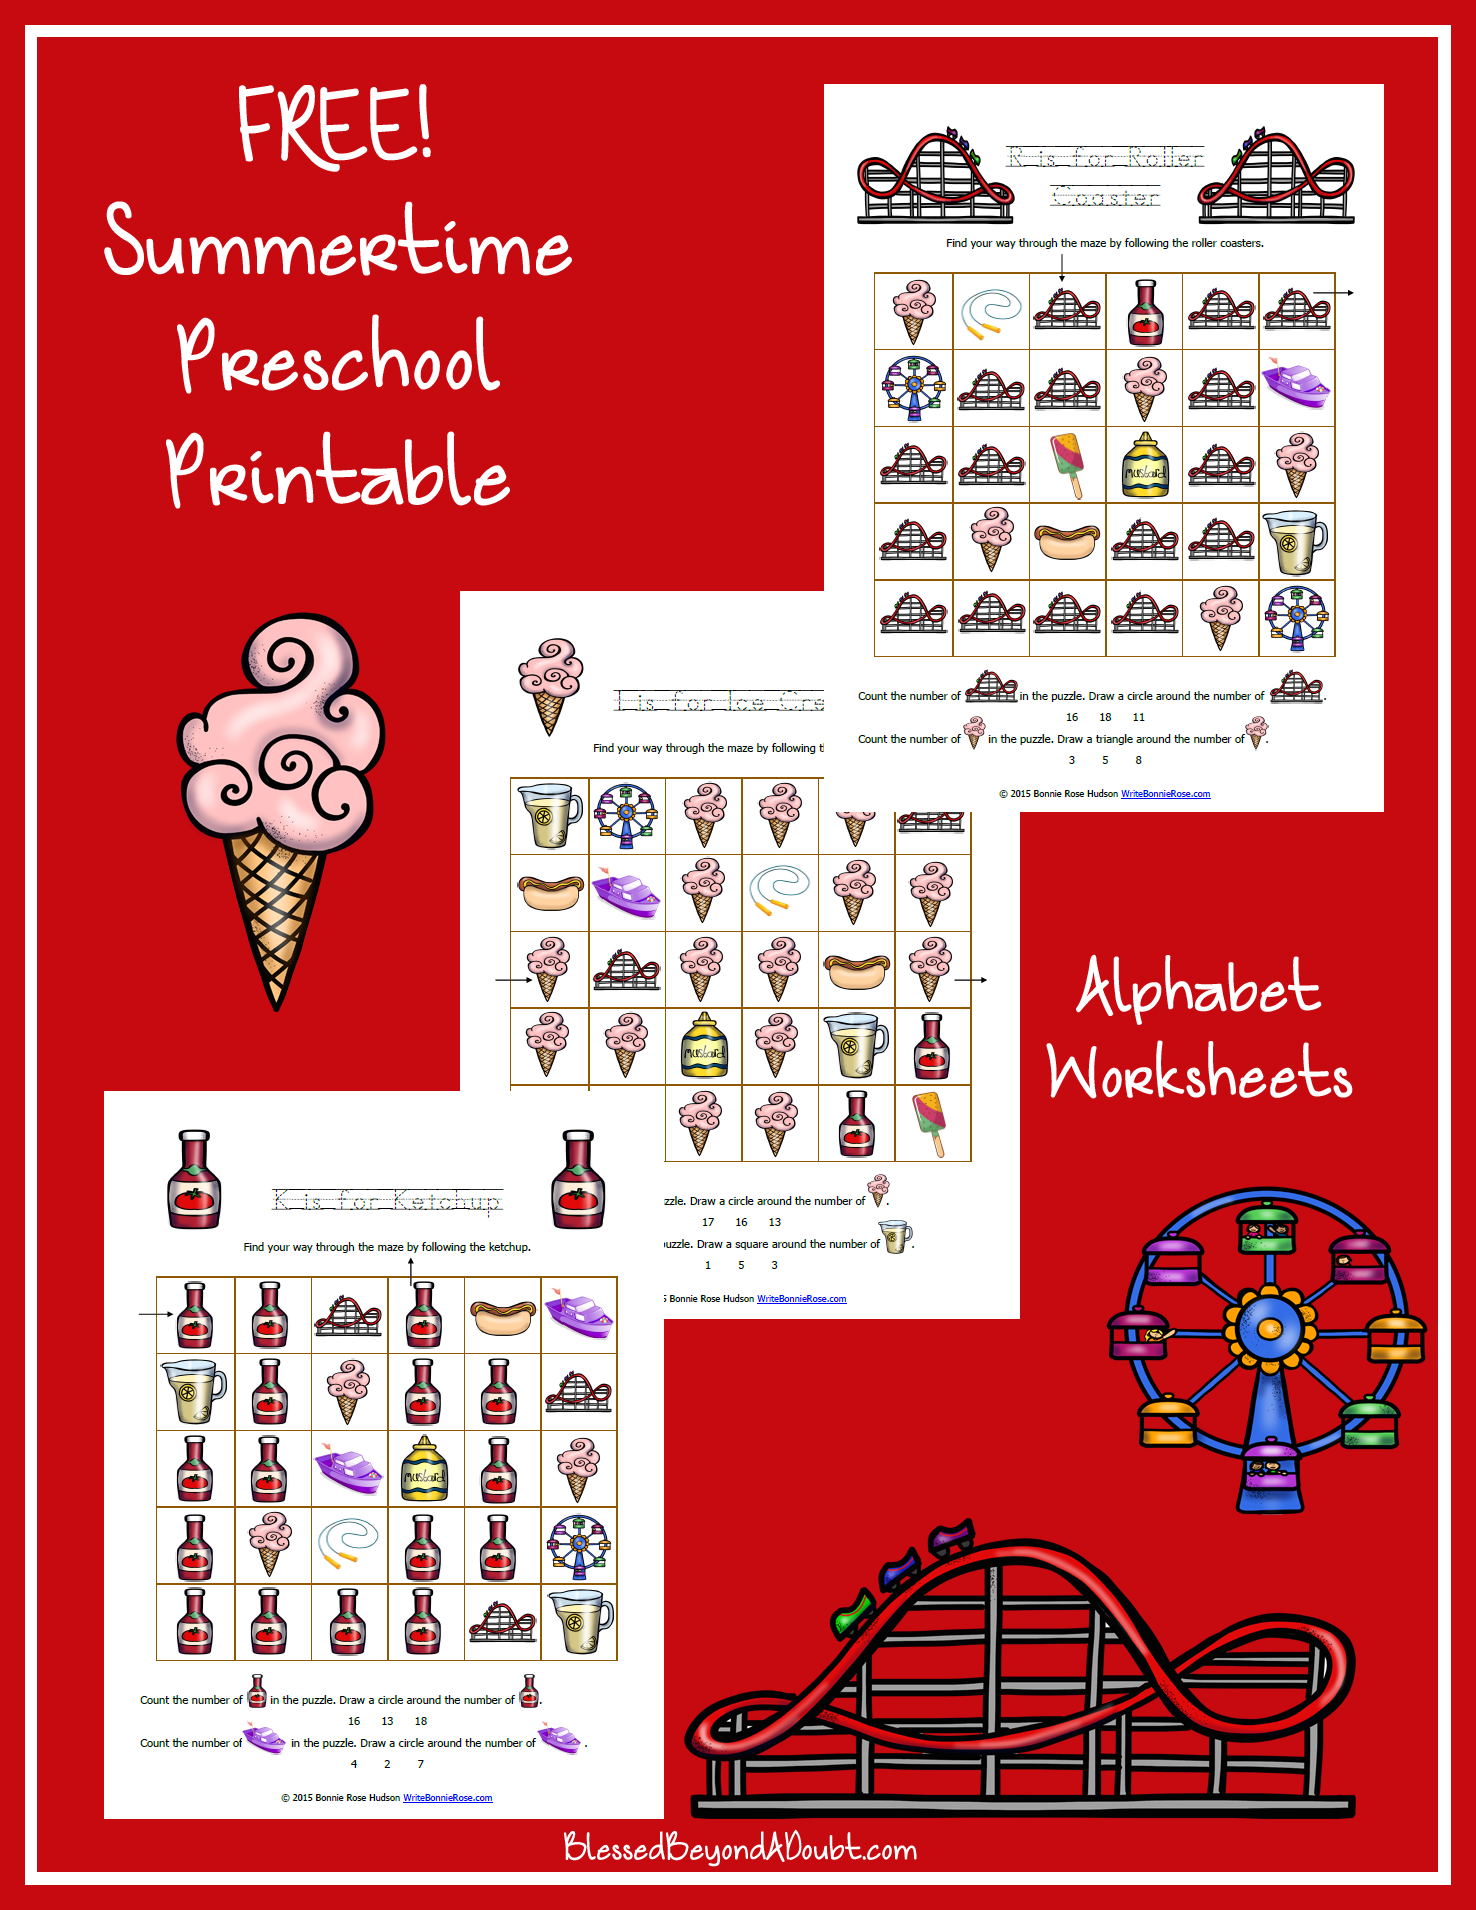 Summer-Themed Preschool Letter Pack